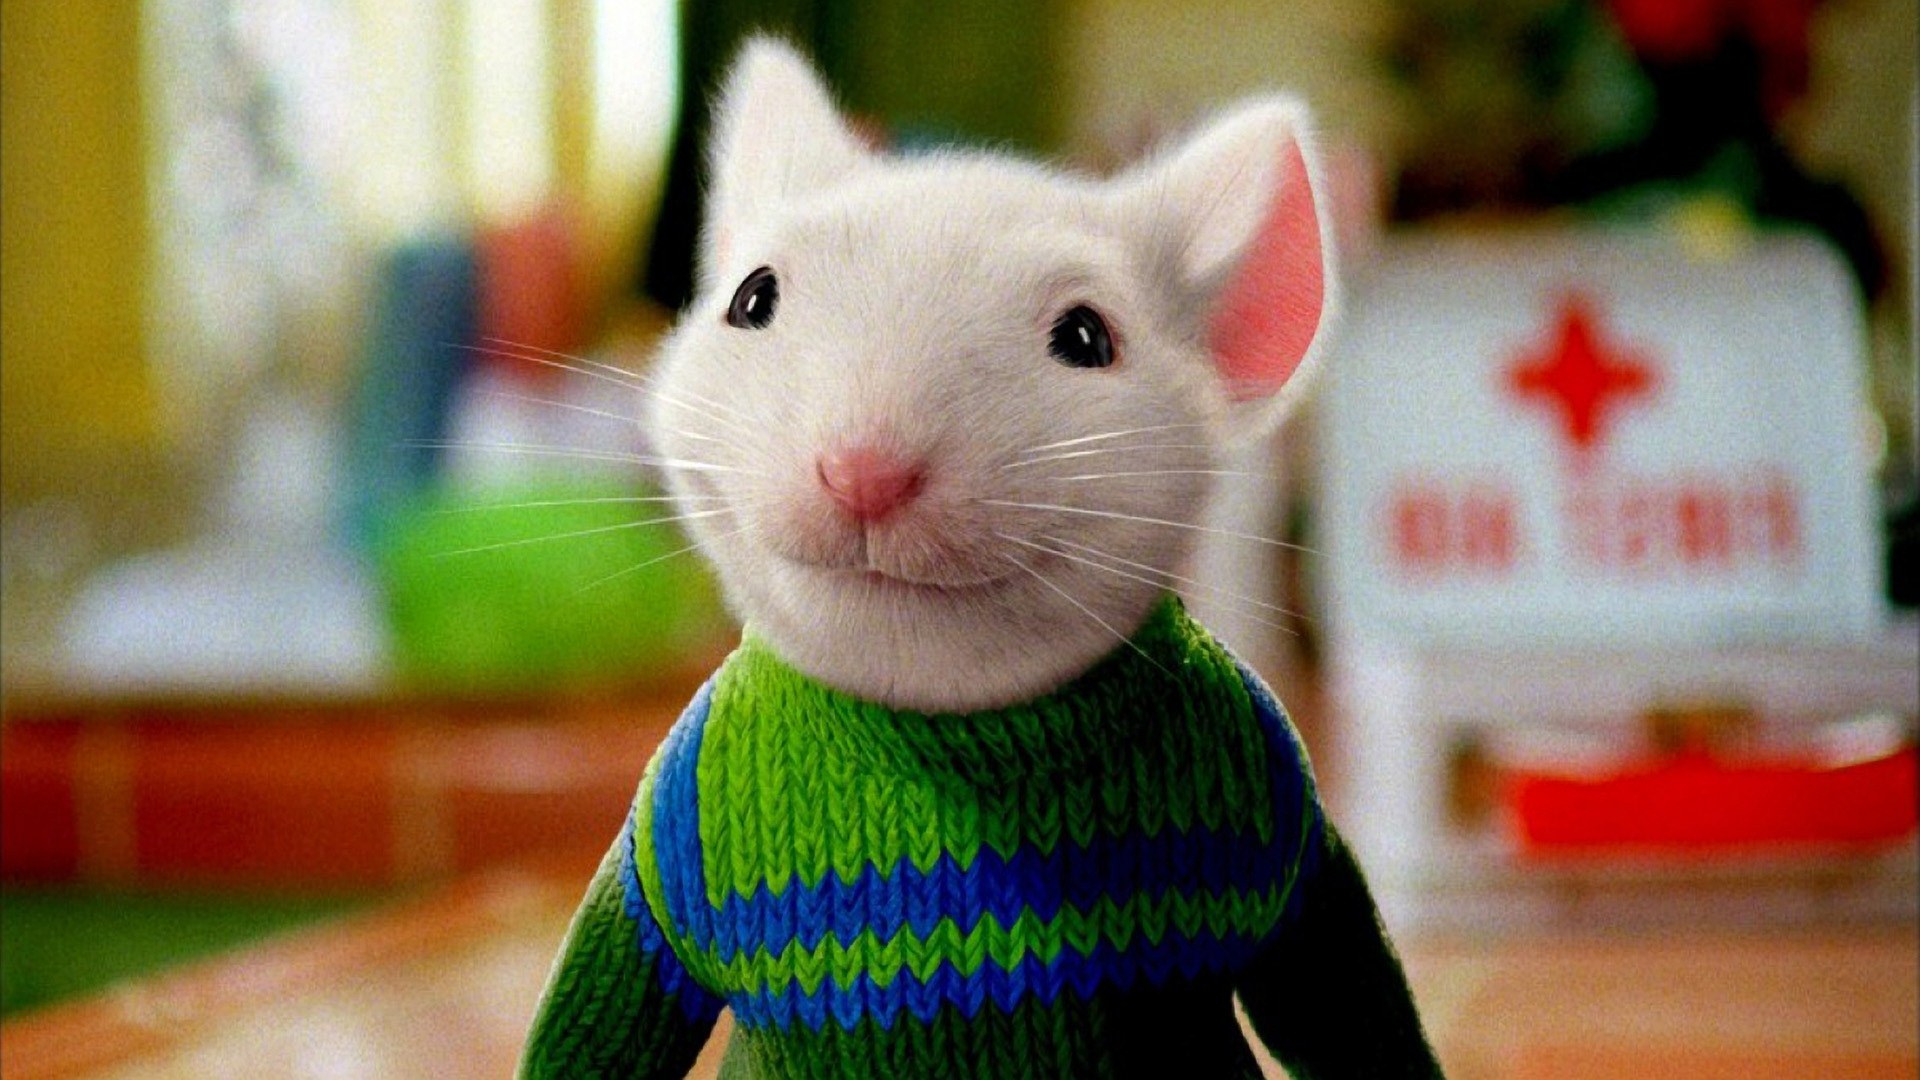 斯图尔特——《精灵鼠小弟》斯图尔特是好莱坞真人结合动画电影中,最